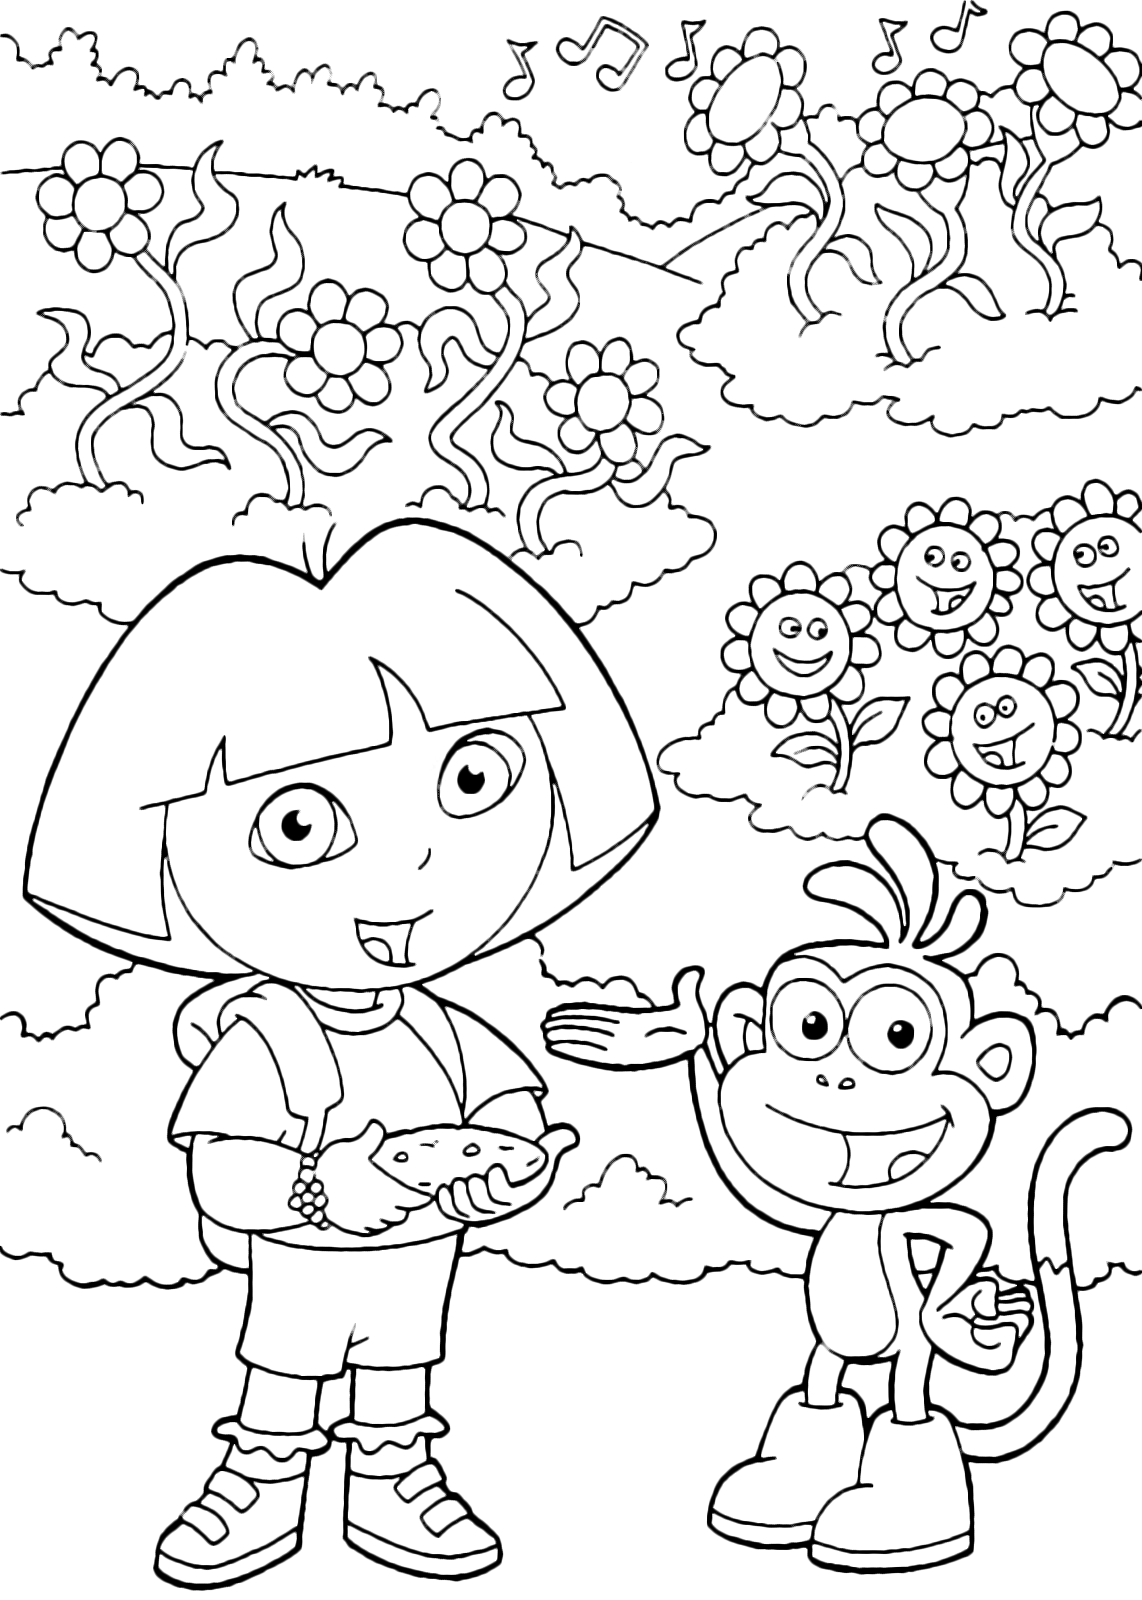 Dora l'esploratrice - Dora e Boots guardano i fiori ballare a ritmo di musica